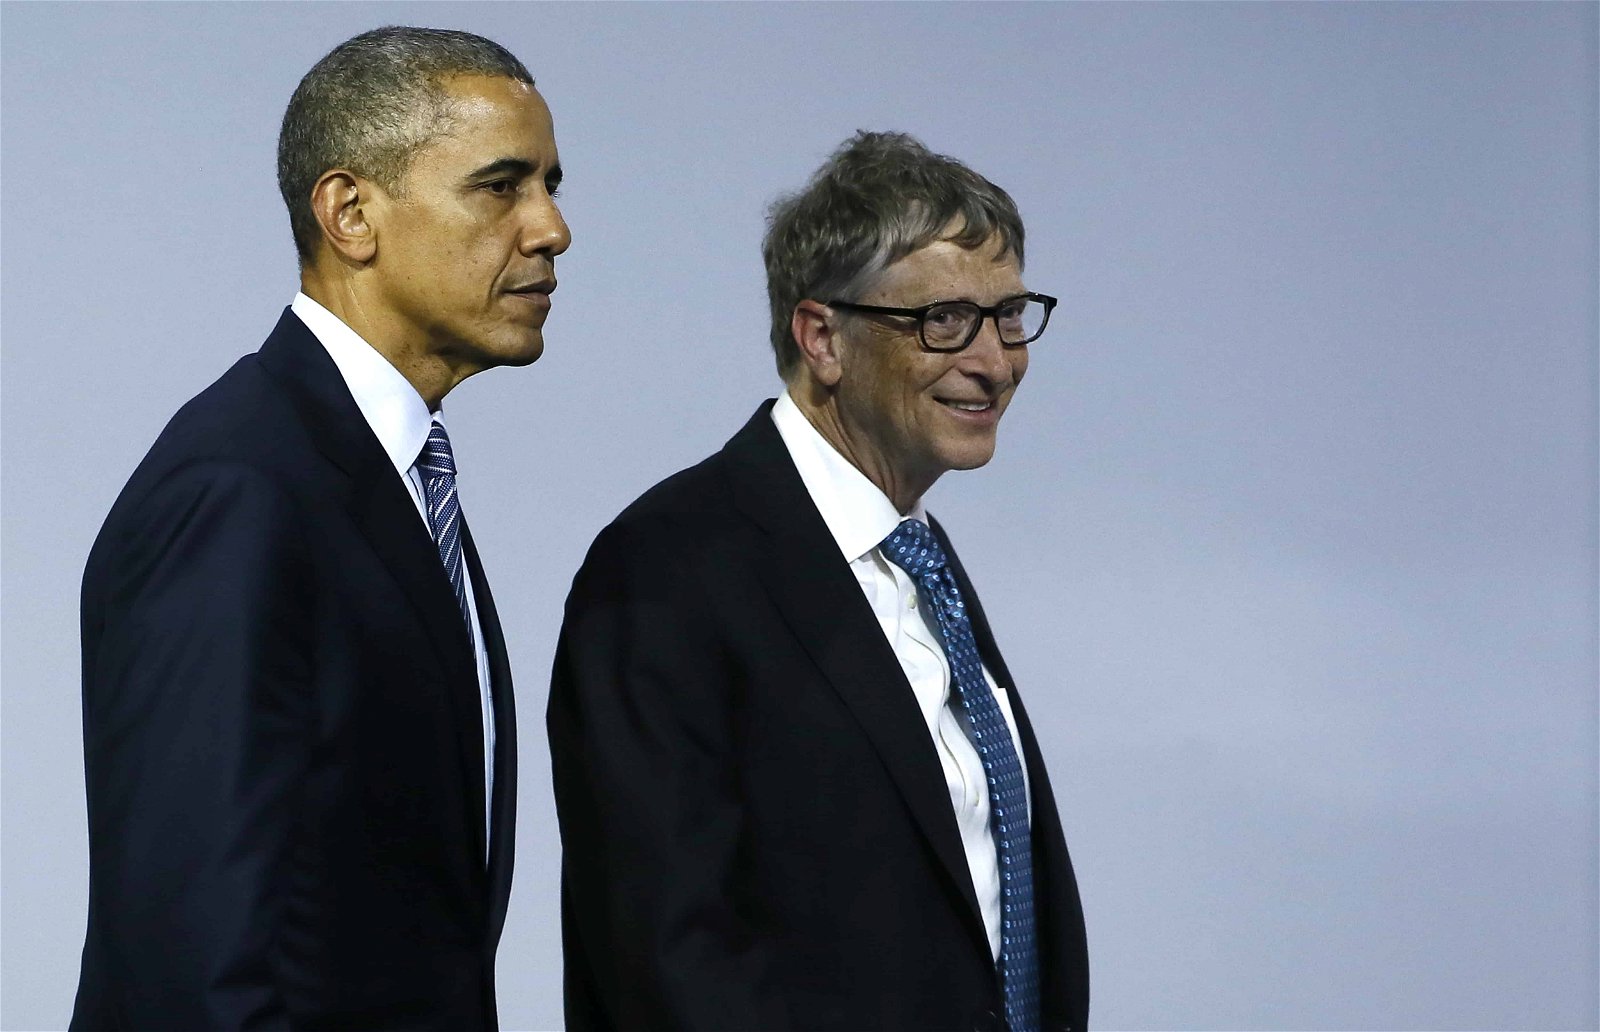 Barack Obama en Bill Gates lopen naast elkaar. Veel superrijken doen aan liefdadigheid als een van hun favoriete hobby's.